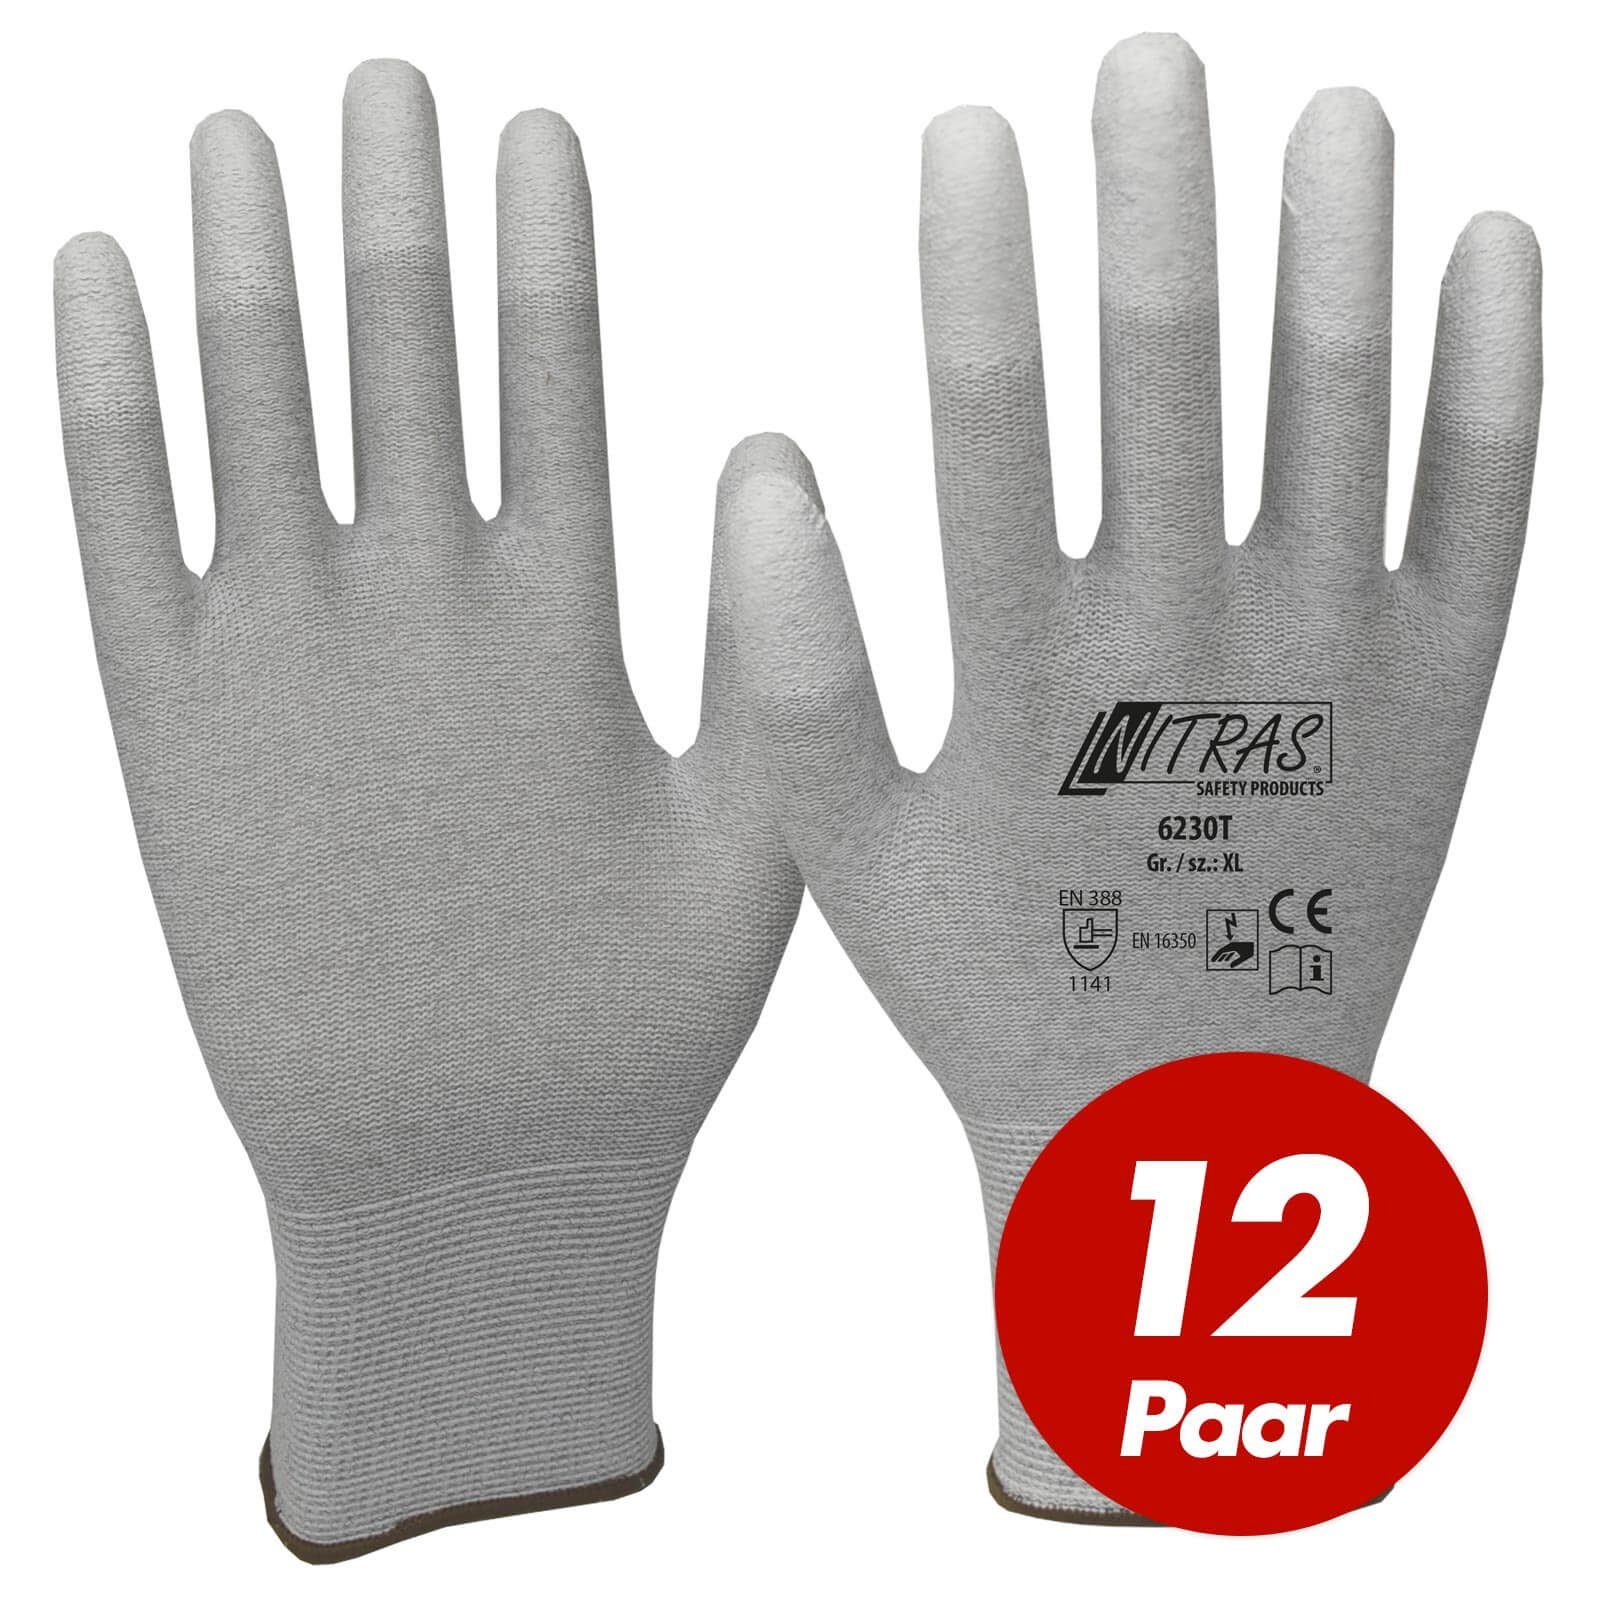 Nitras Mechaniker-Handschuhe NITRAS ESD-Handschuhe 6230T, antistatisch, touchscreenfähig - 12 Paar (Spar-Set)